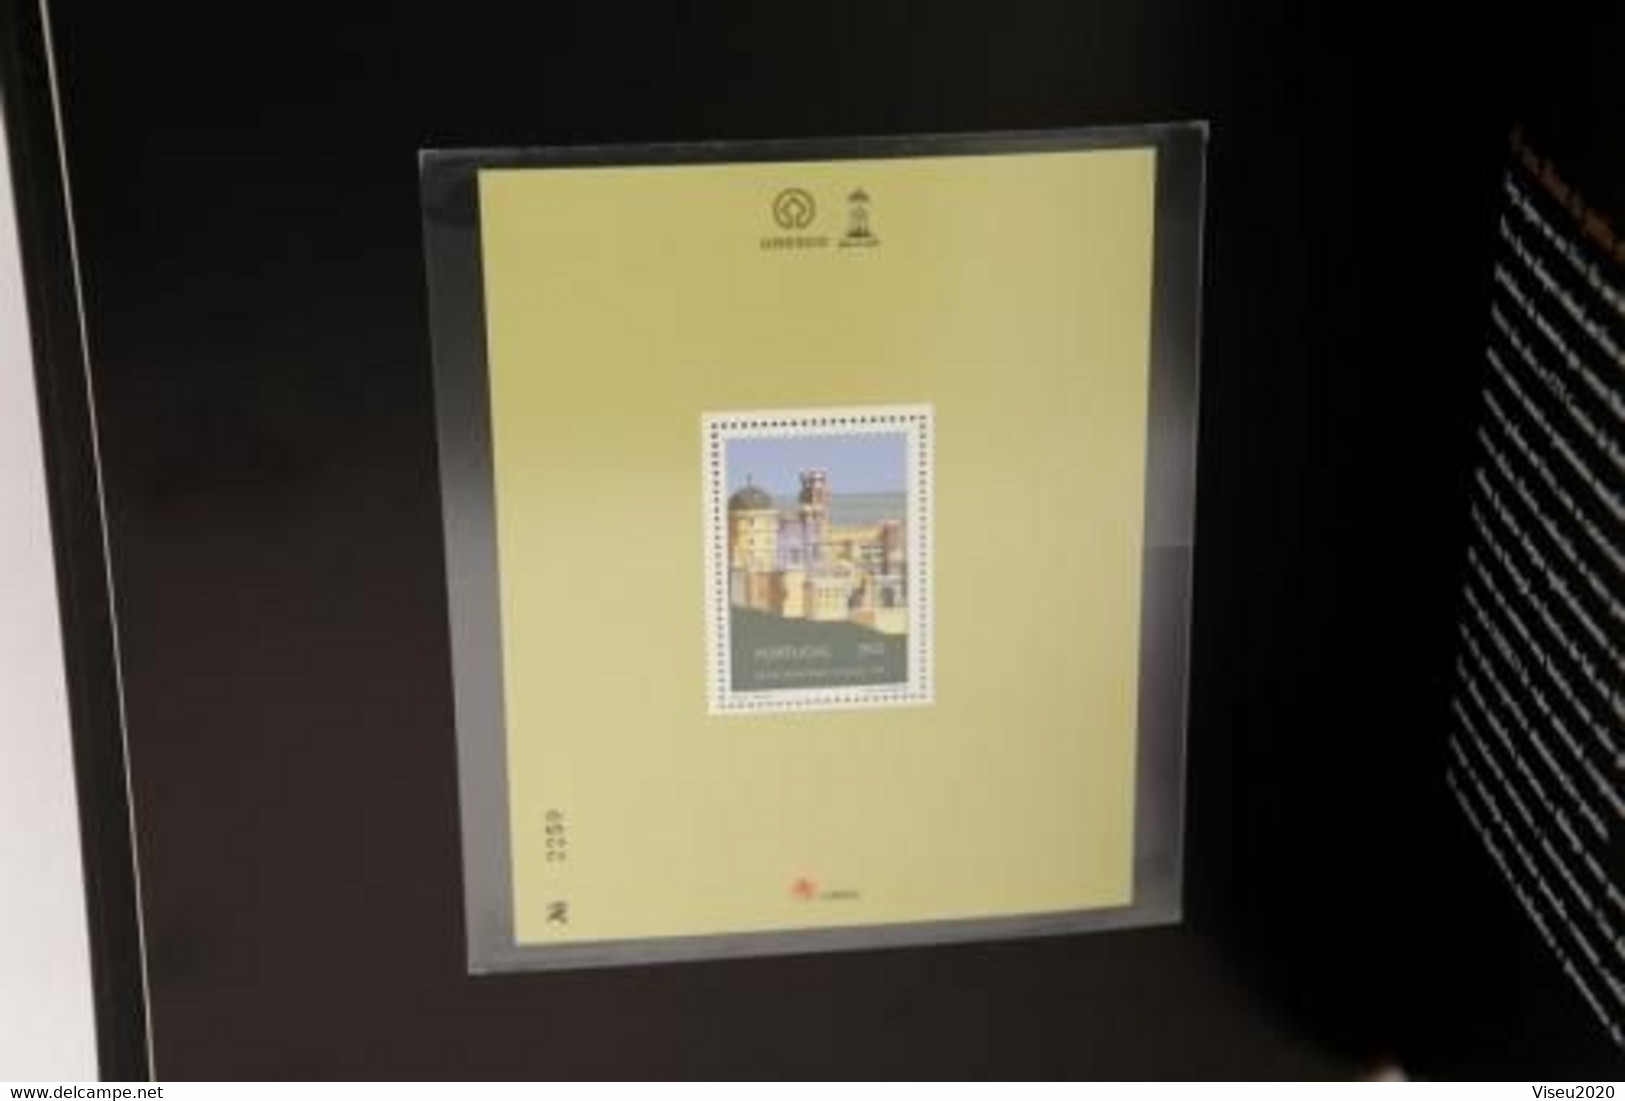 Portugal 2003 - PATRIMÓNIOS MUNDIAIS COM SELO PORTUGUÊS EM QUATRO CONTINENTES - LIVRO TEMATICO CTT - Book Of The Year